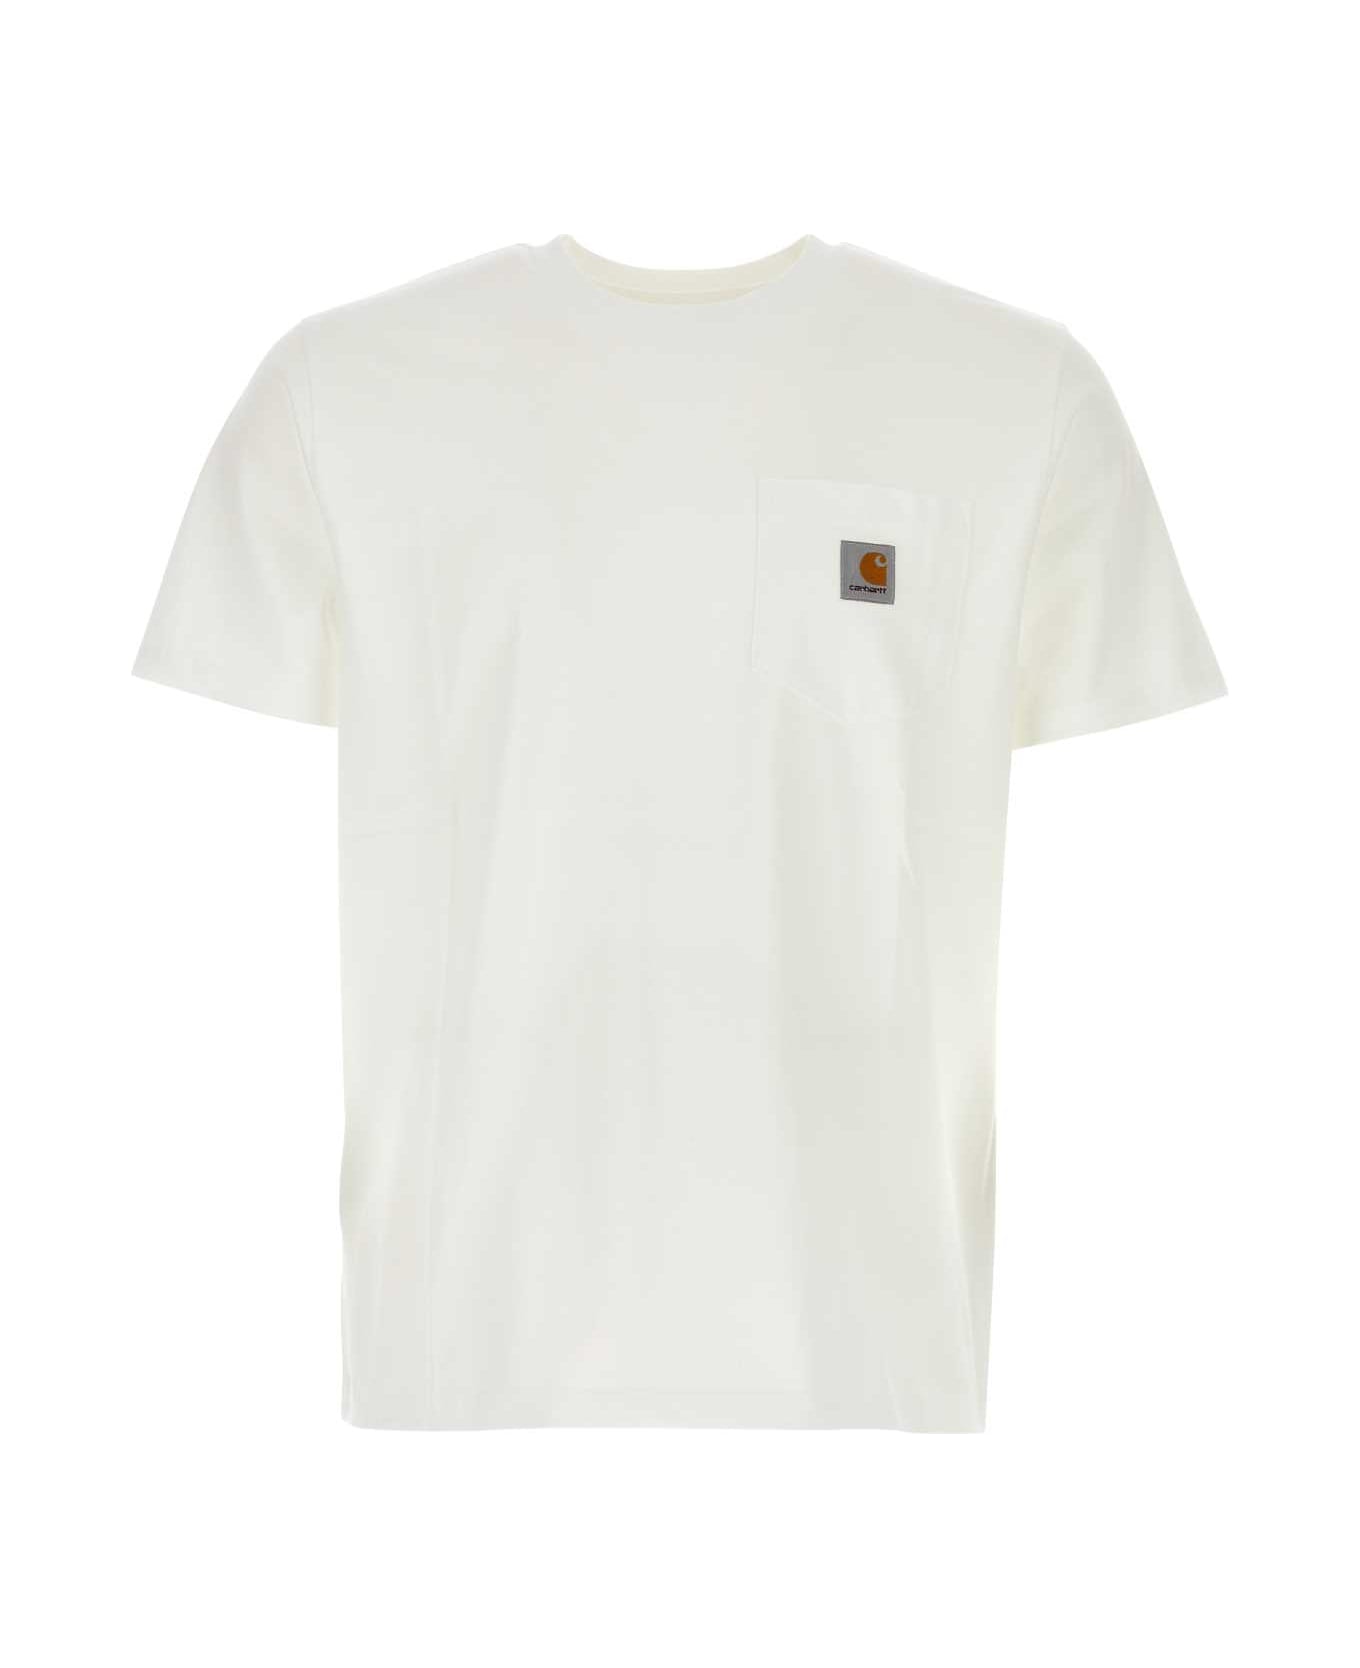 Carhartt White Cotton S/s Pocket T-shirt - WHITE